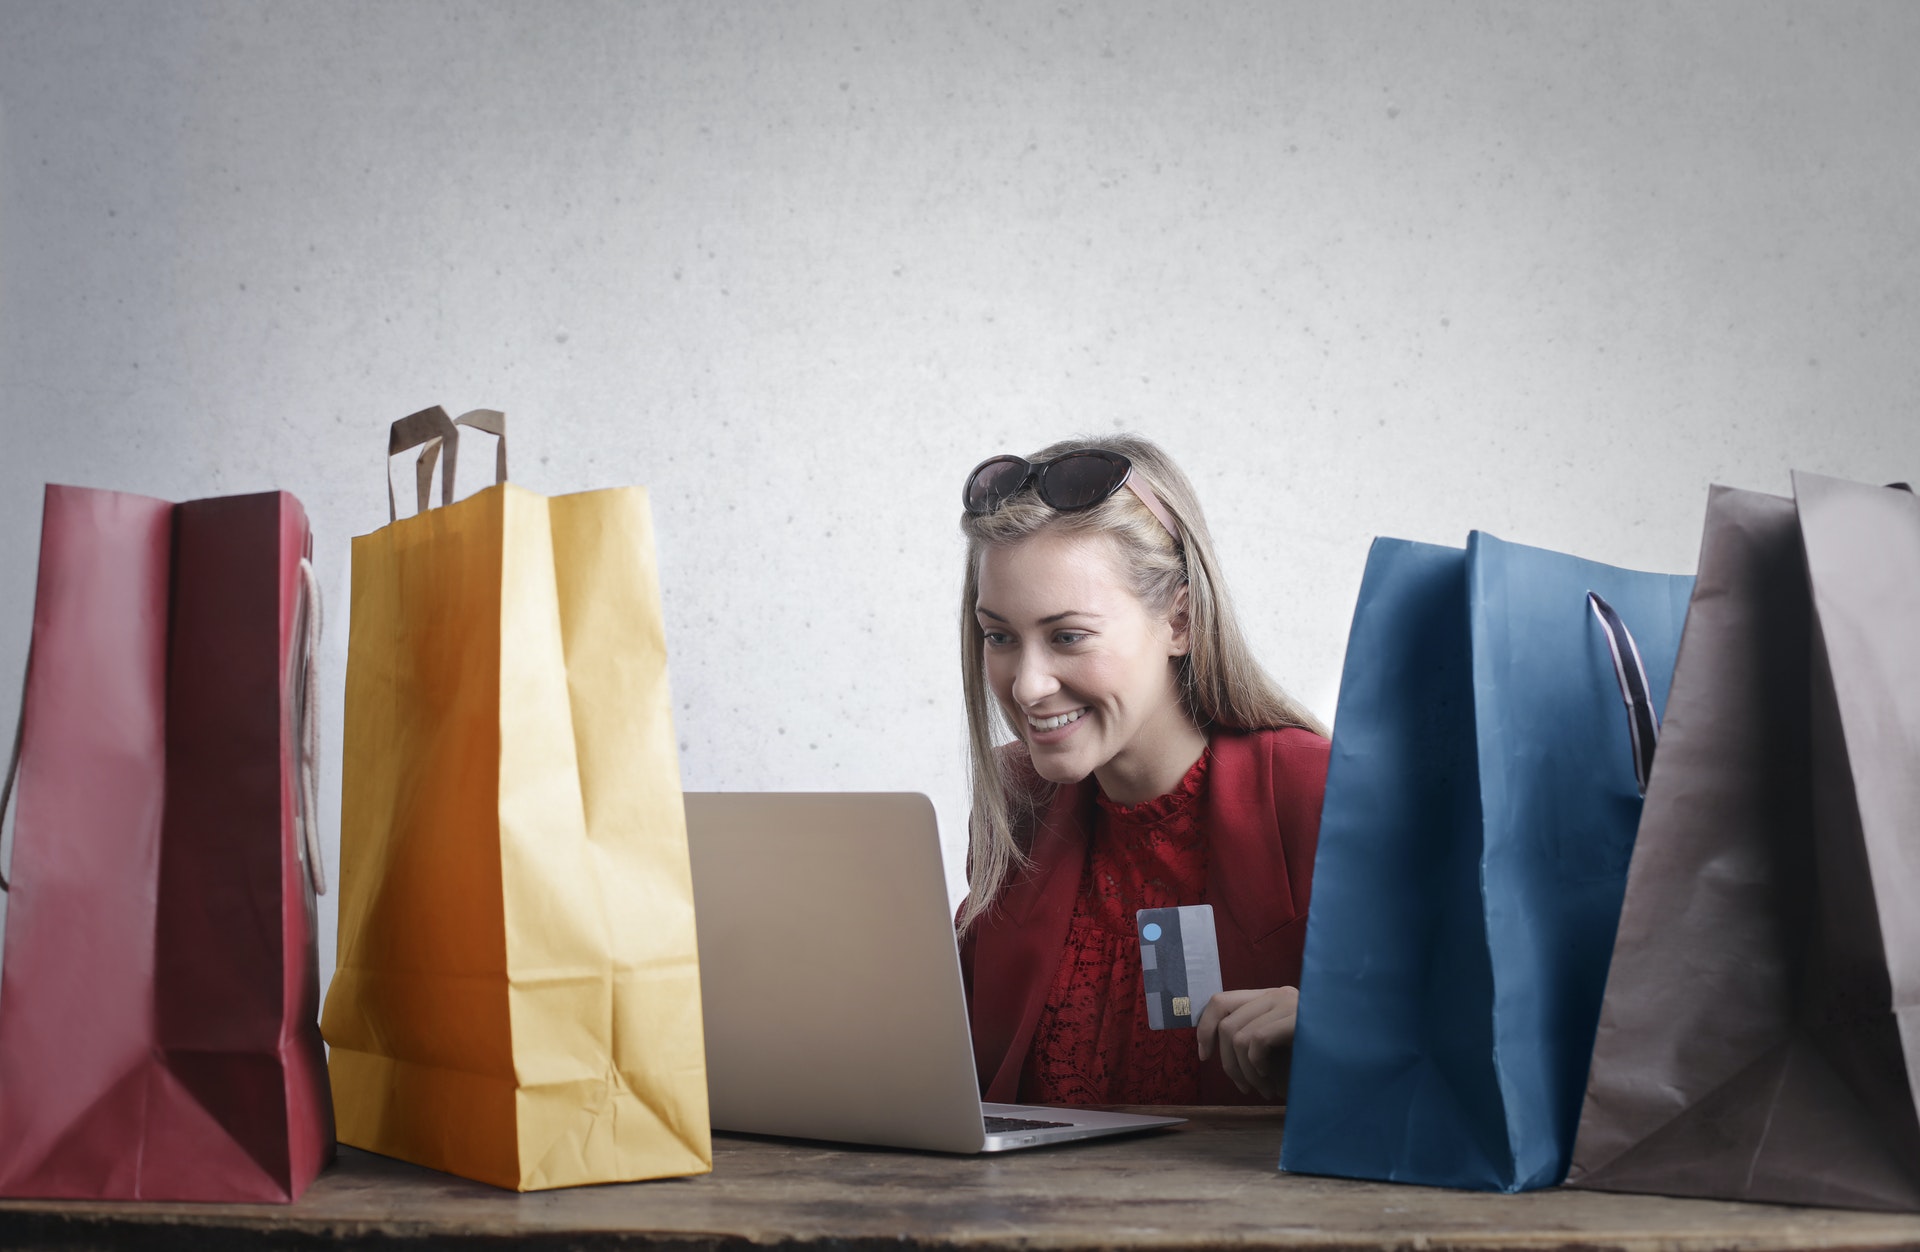 Mulher cercada por sacolas de compras em frente um computador. Imagem ilustrativa do texto sobre negocios online.
